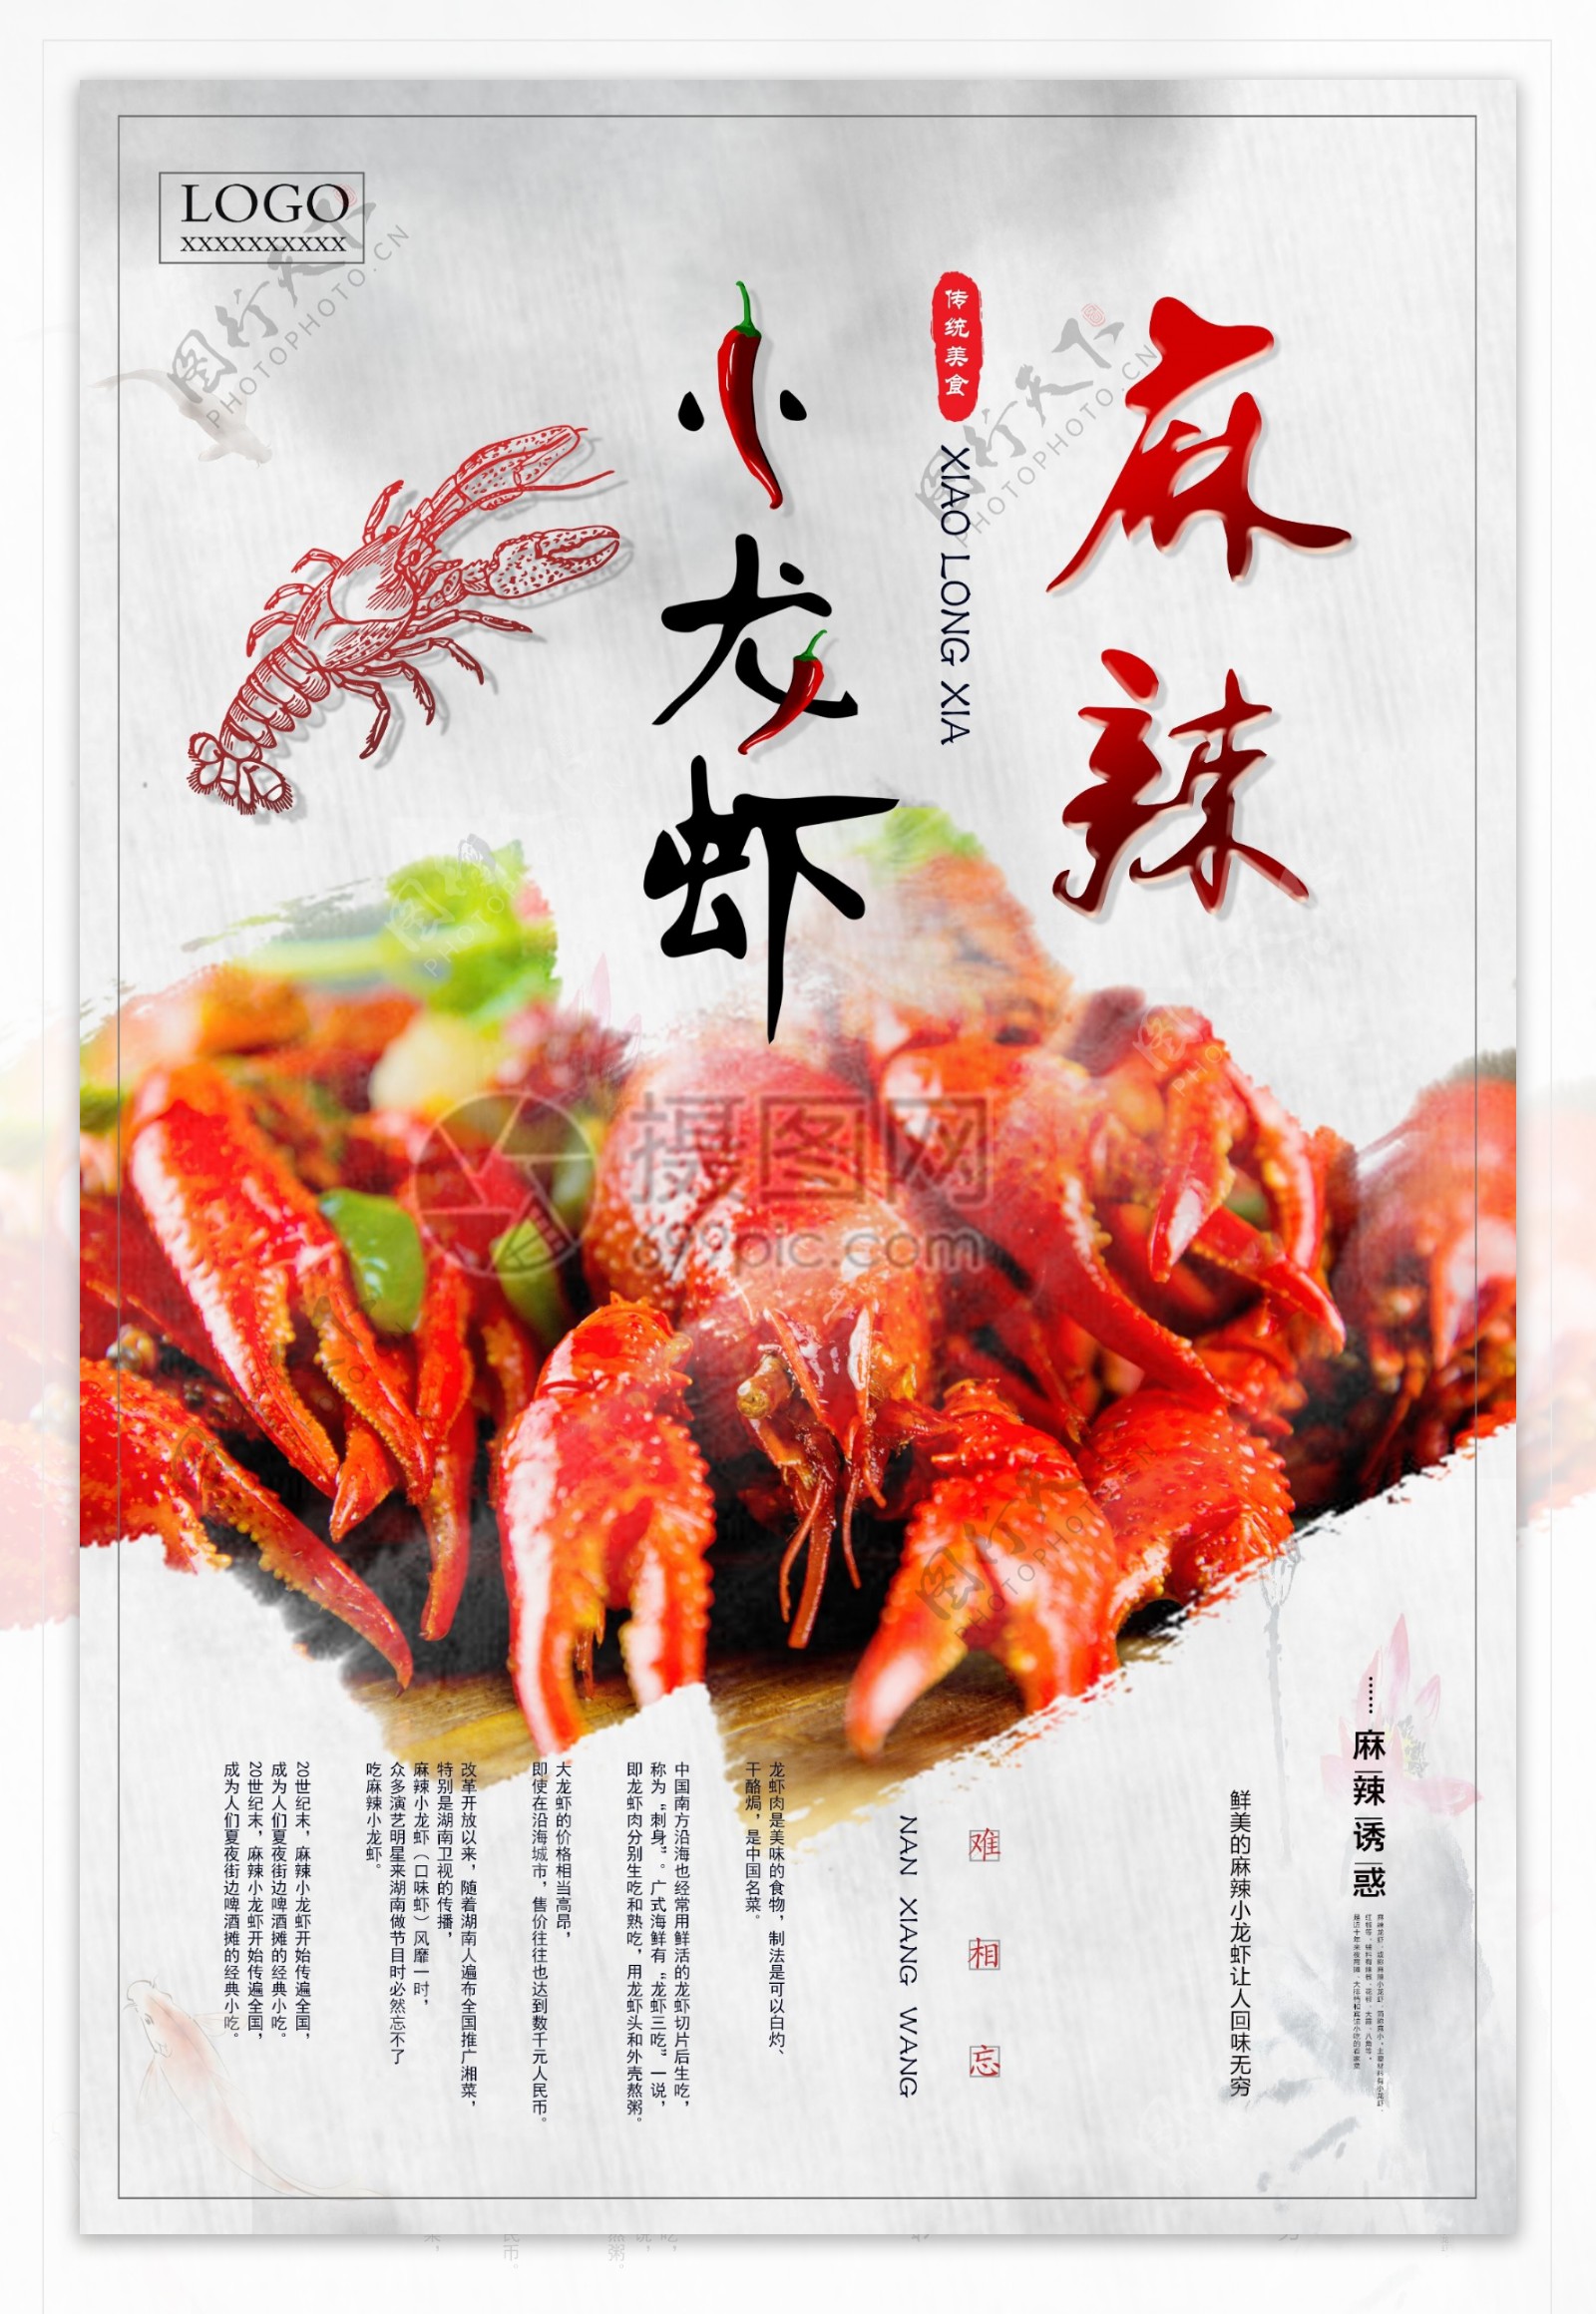 麻辣小龙虾创意海报